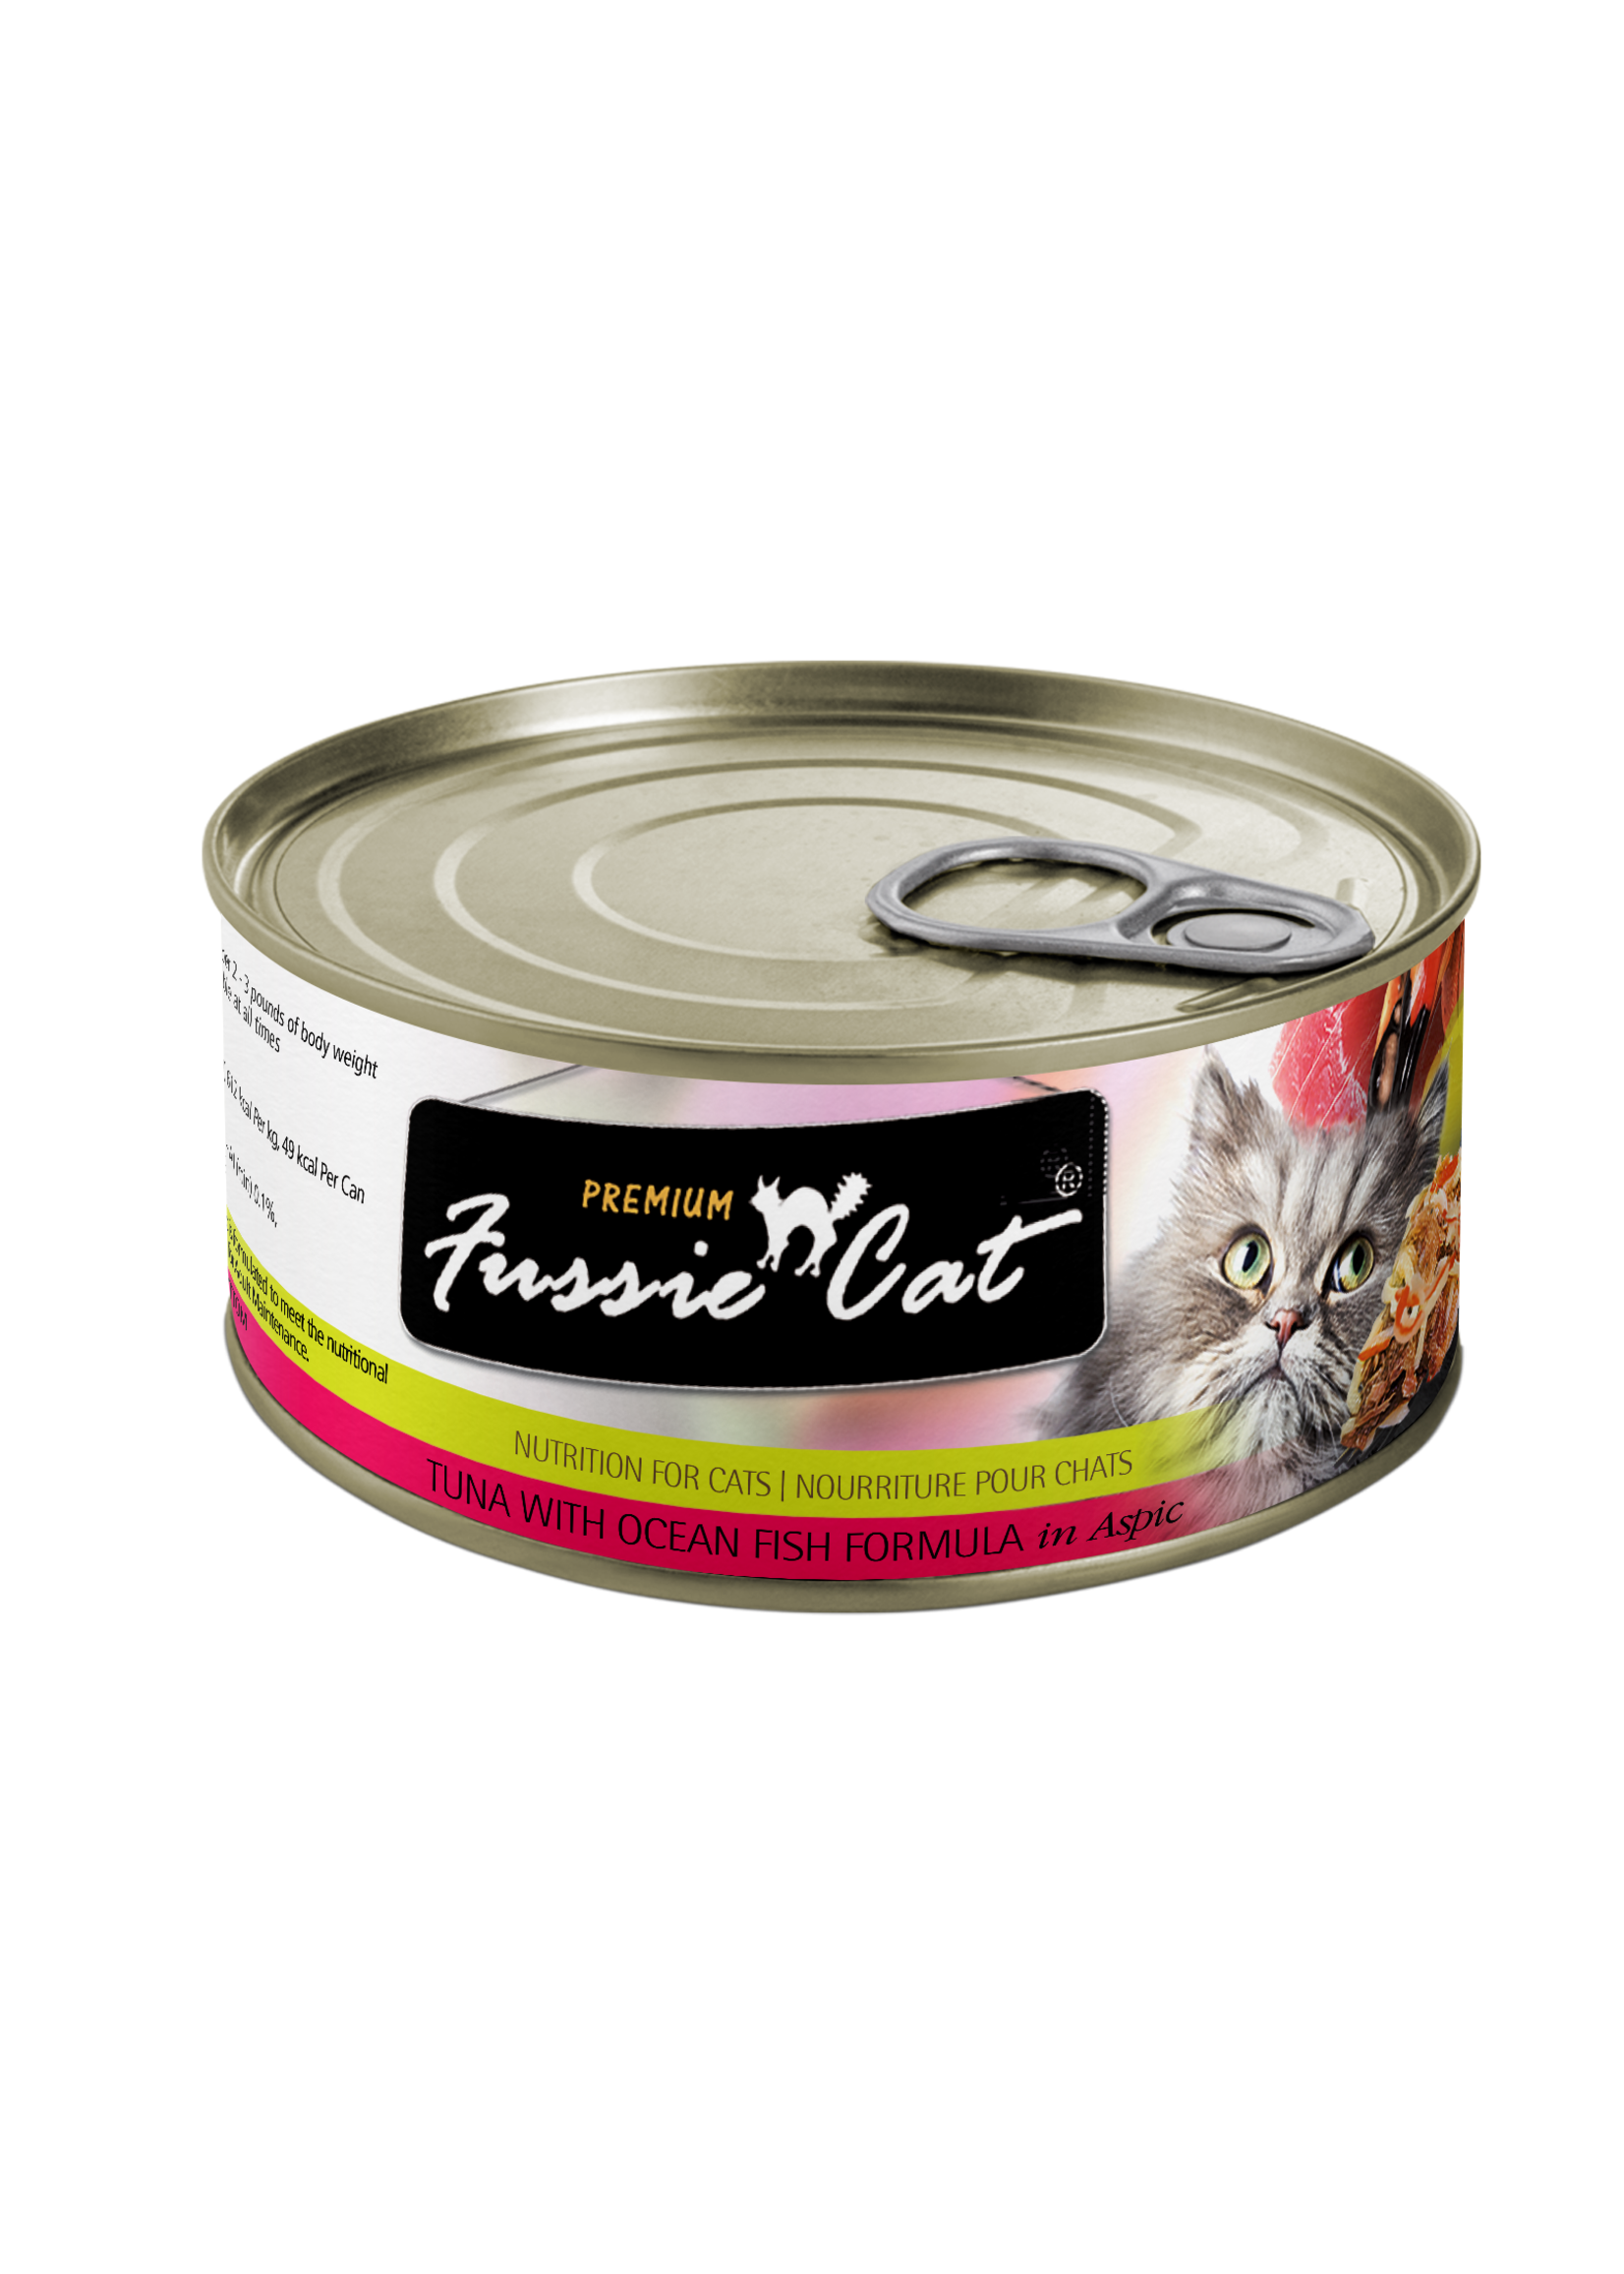 Fussie Cat Premium Tuna with Oceanfish Wet Food